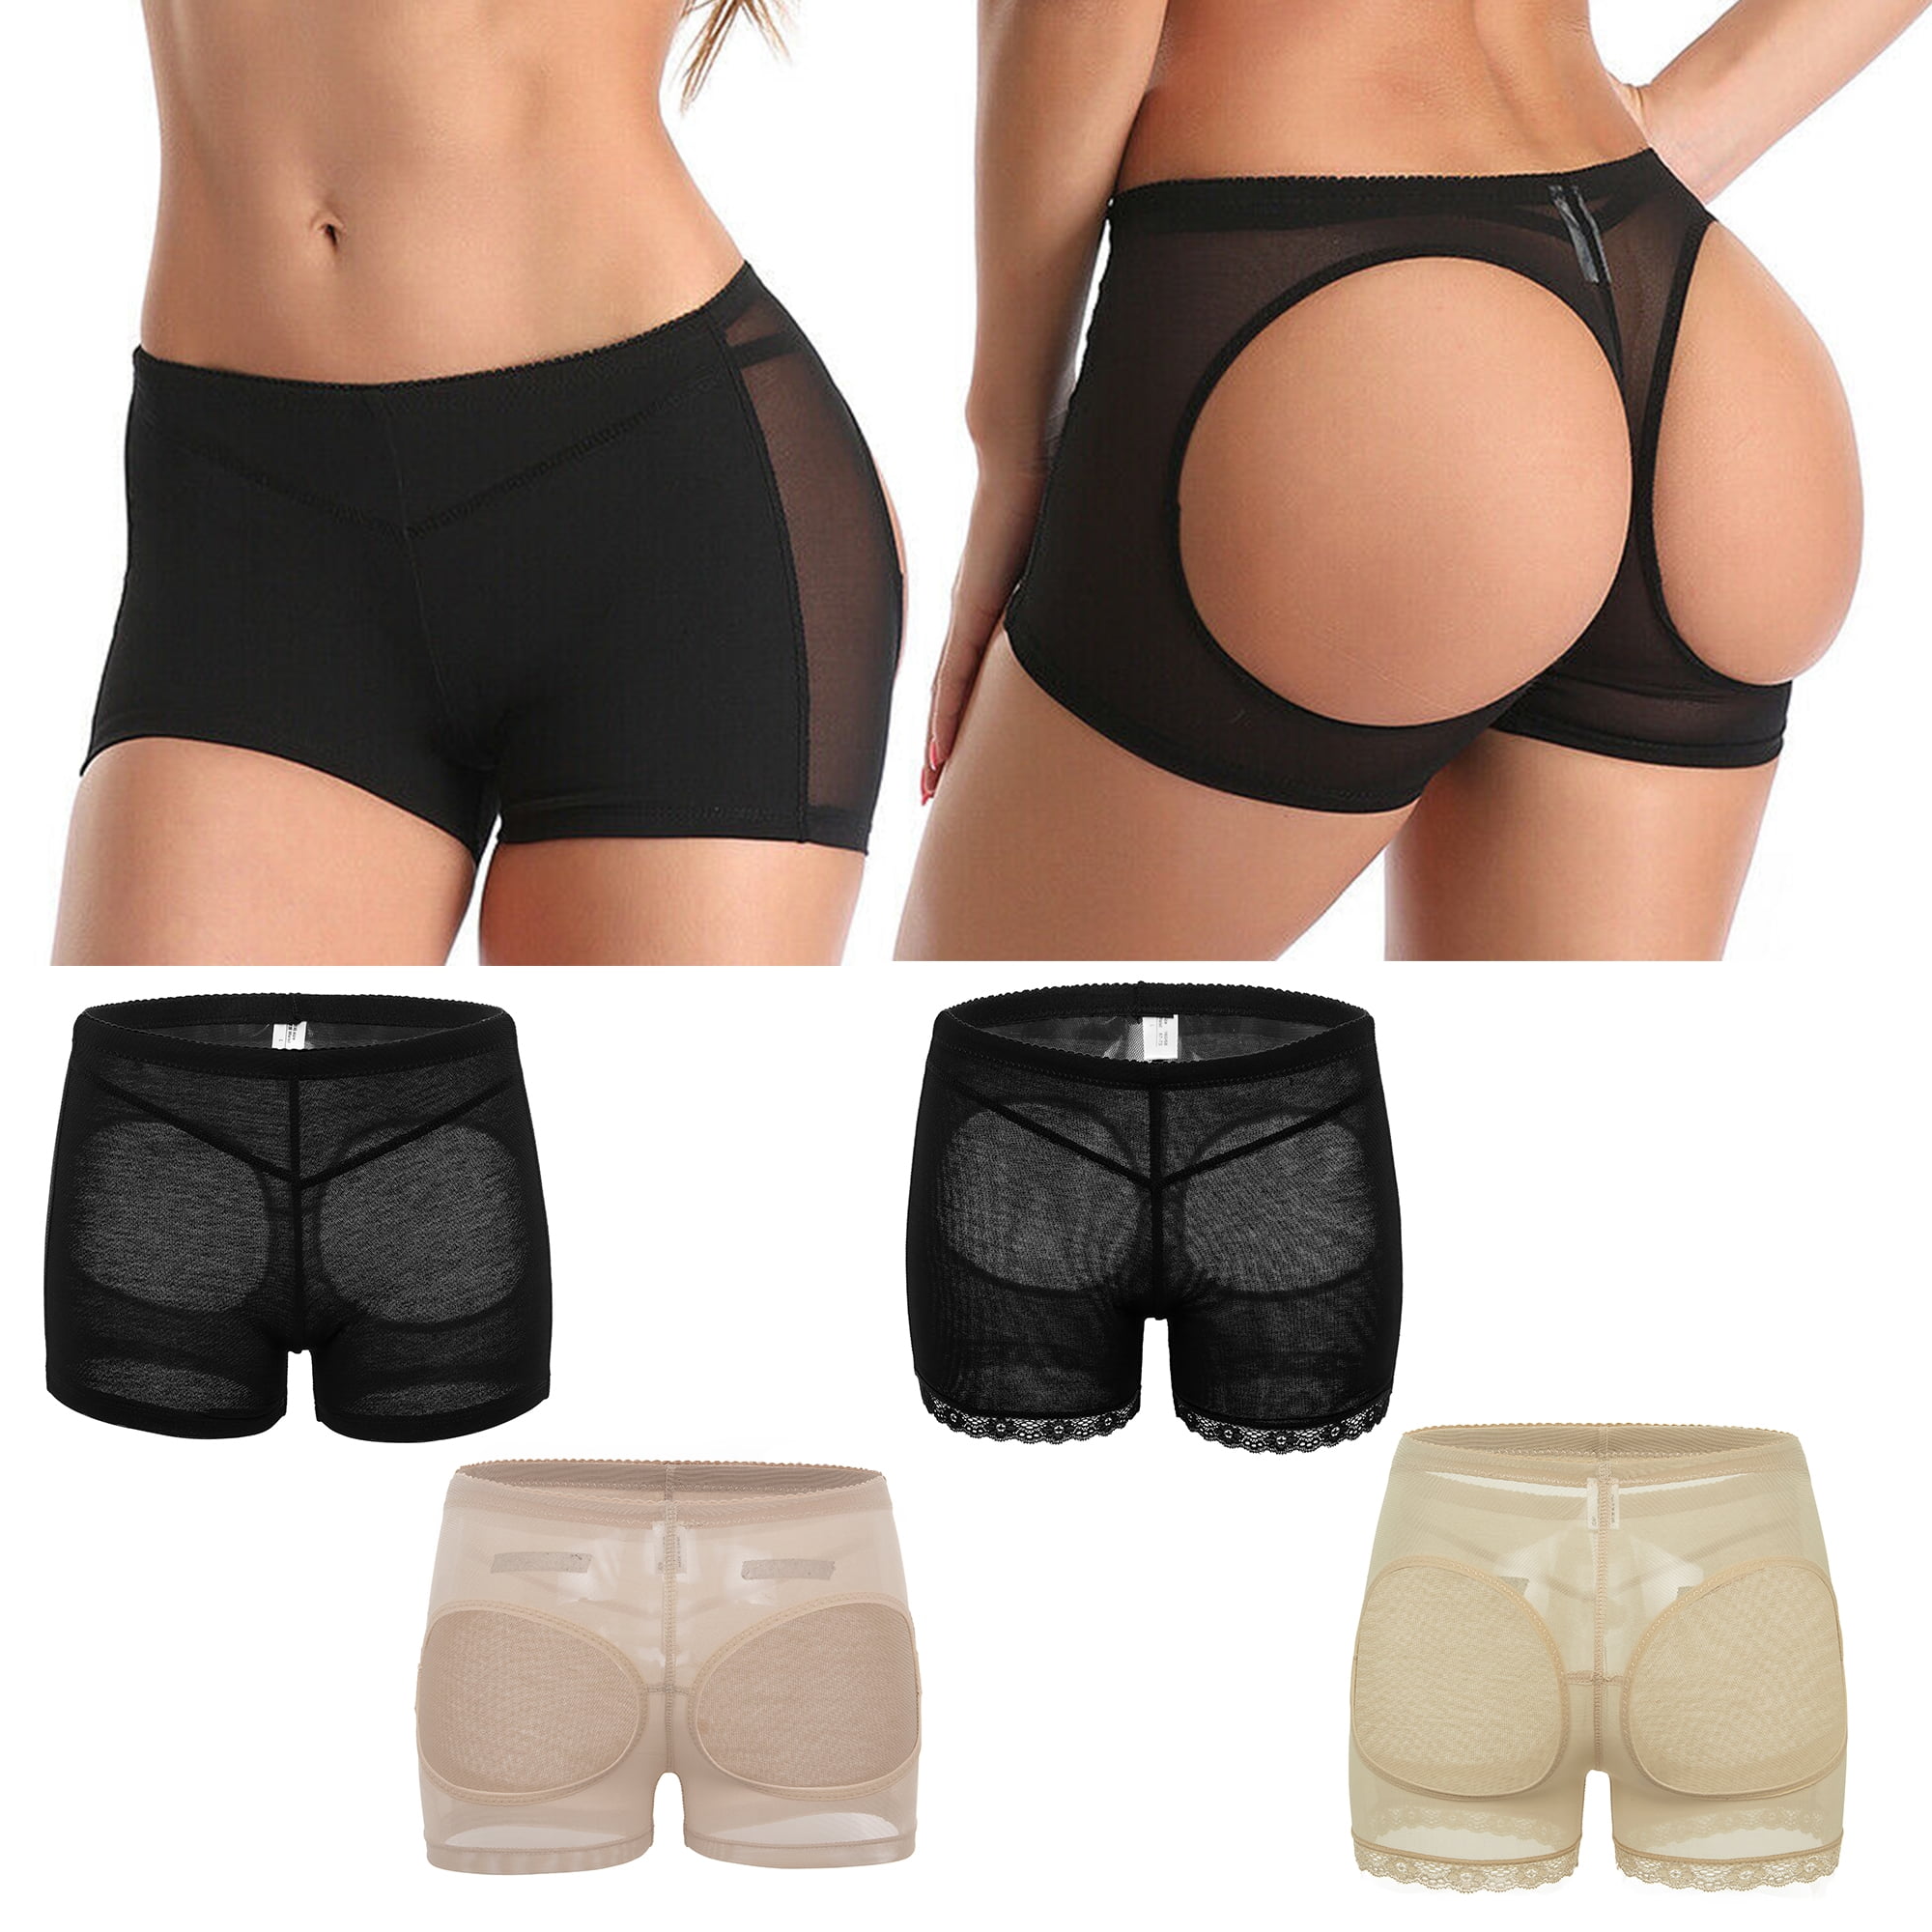 Elastic Women High Waist Butt Lift Body Shaper Panty Underwear Seamless Butt  Lift Panties, Black, S 